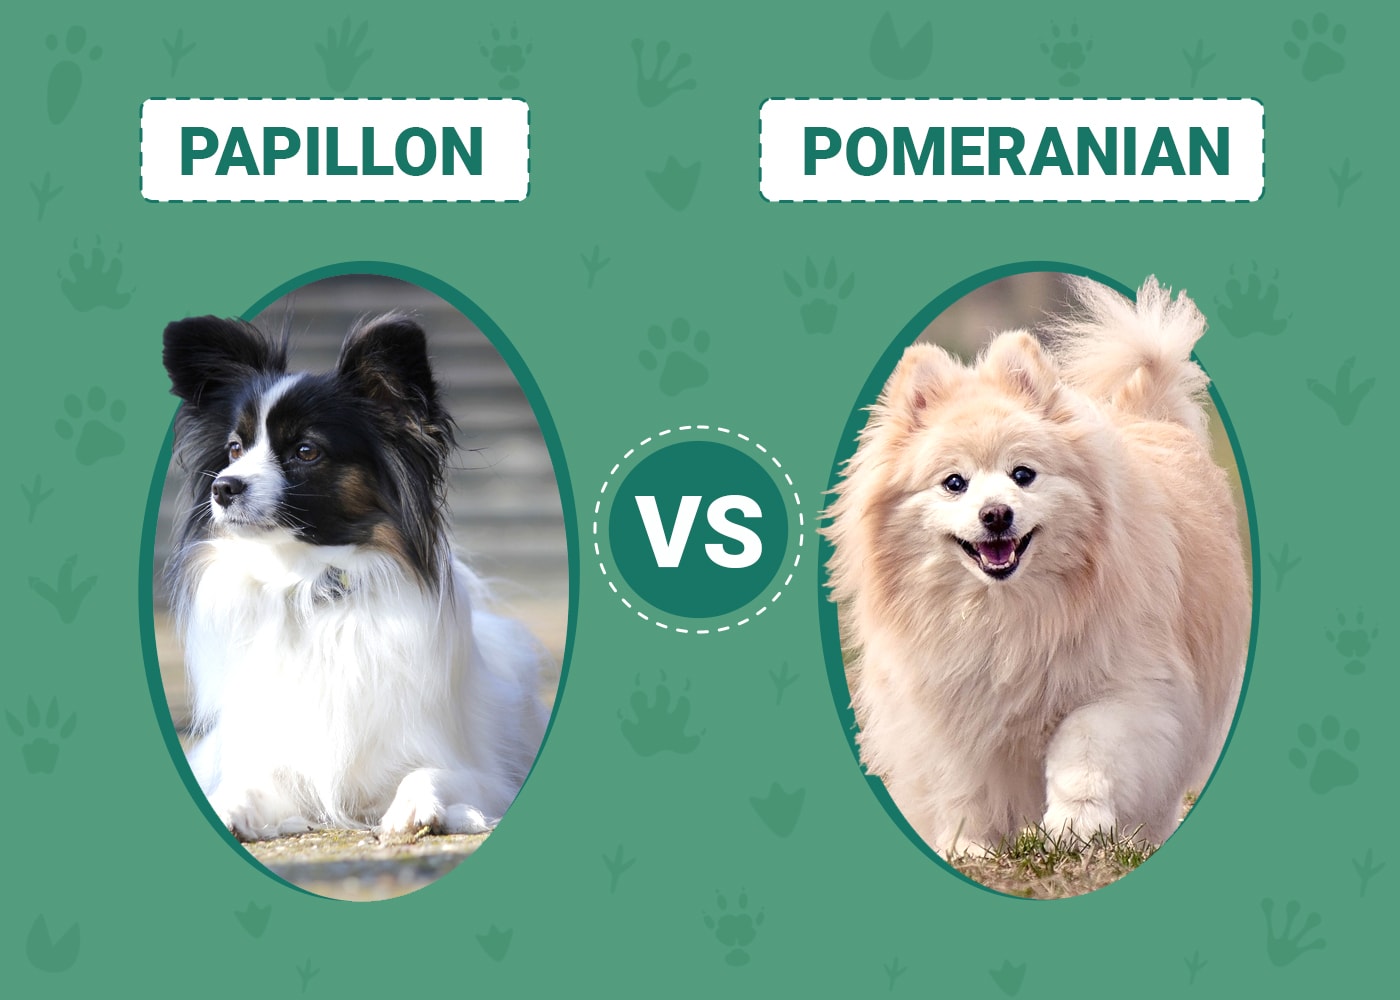 Papillon vs Pomeranian